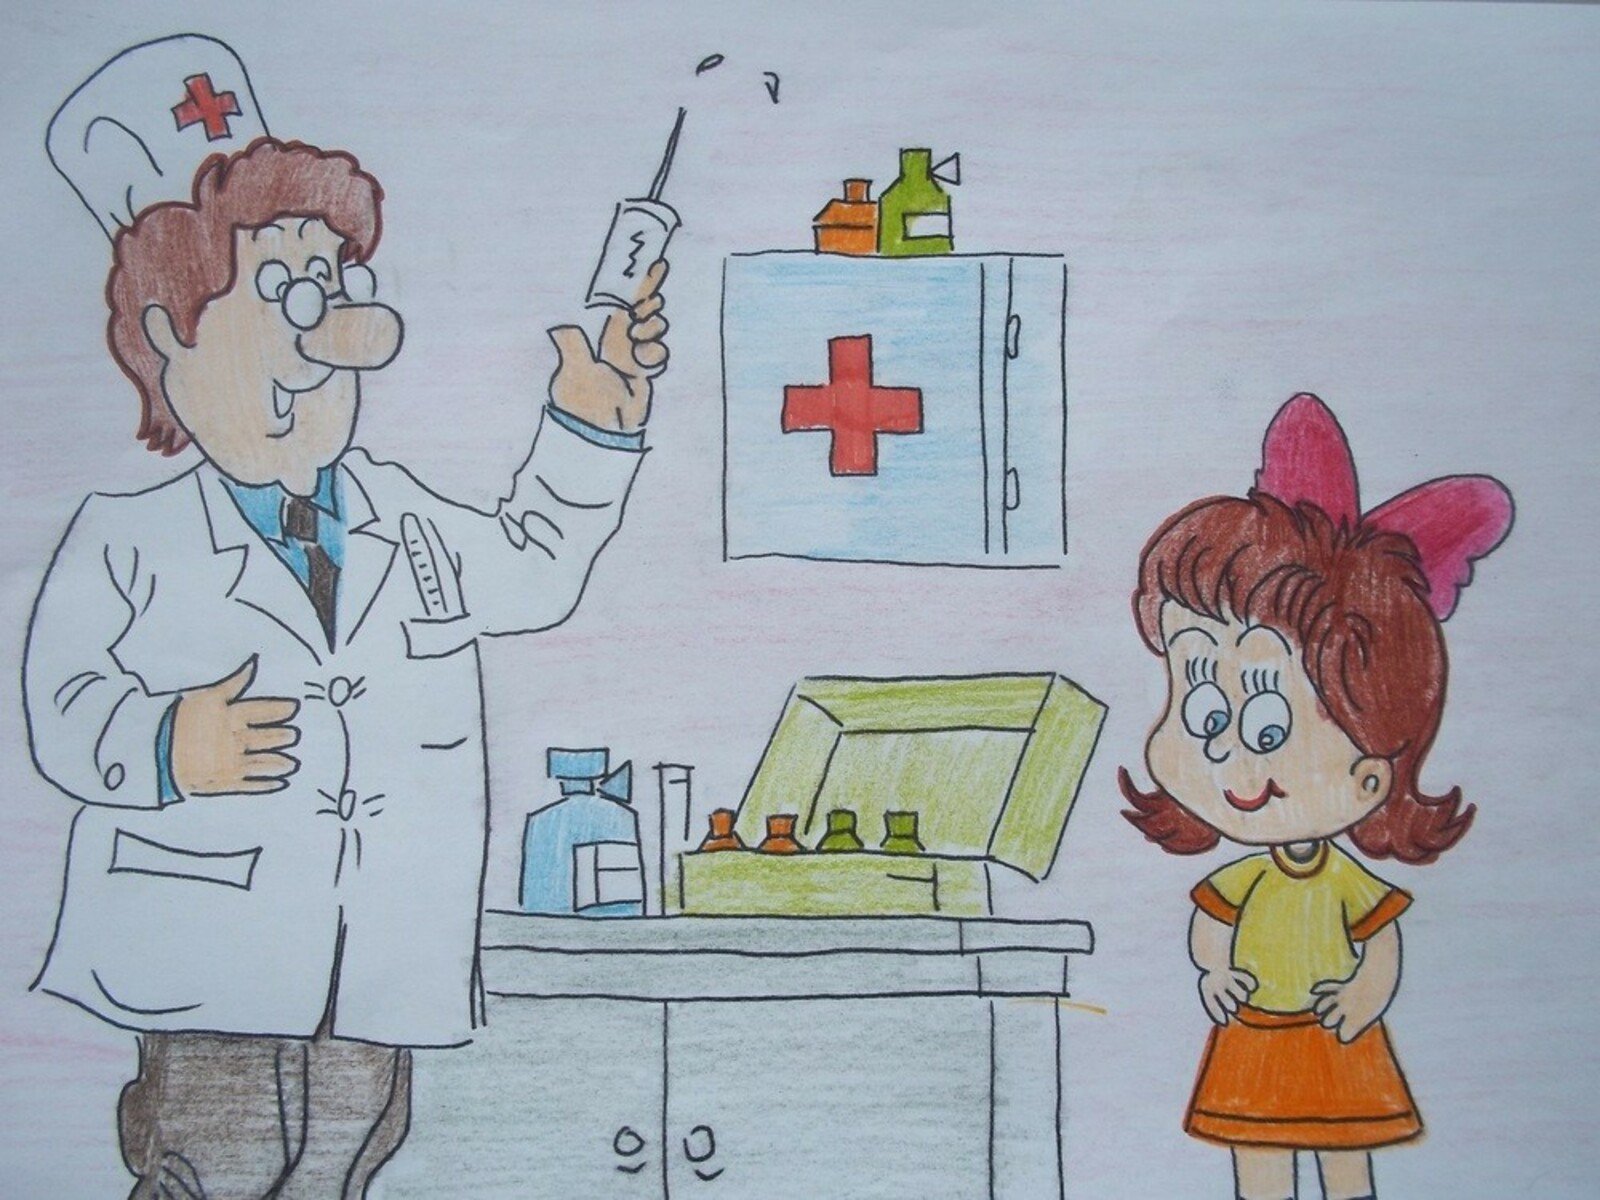 Рисунок на тему цитовир побеждает грипп. Рисунки на тему прививок. Рисунок на тему вакцинация. Рисунки про прививки для детей. Рисунок на тему прививка.